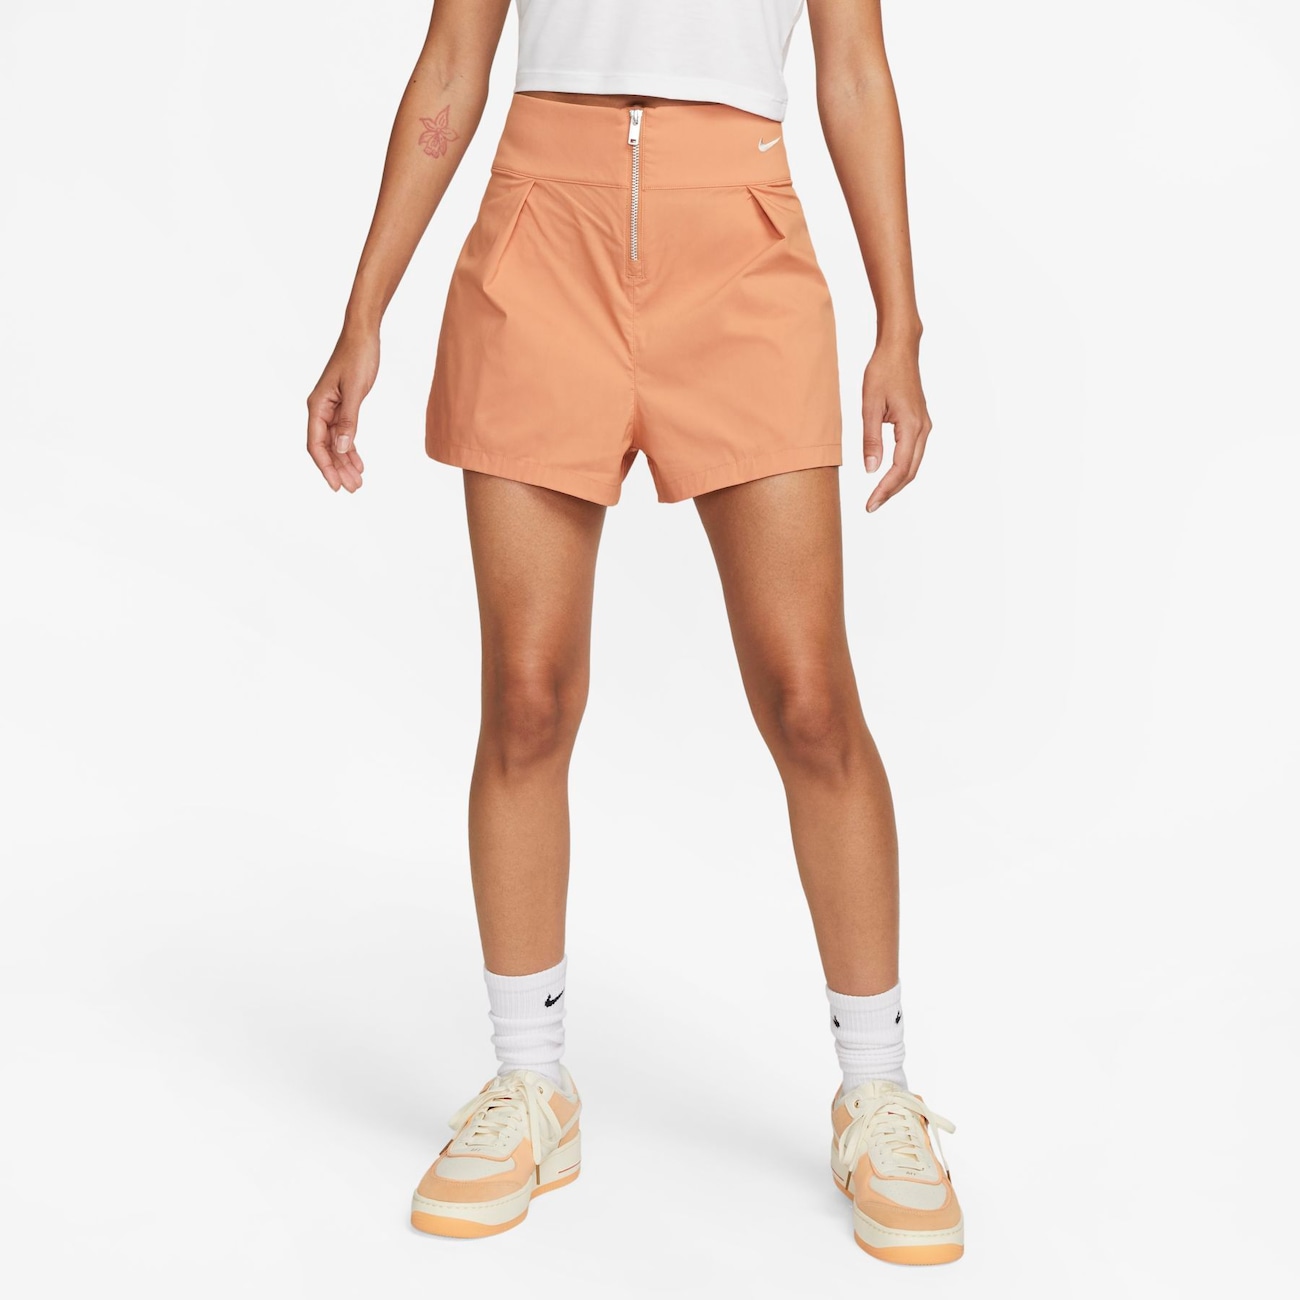 Shorts Nike Sportswear Collection Feminino